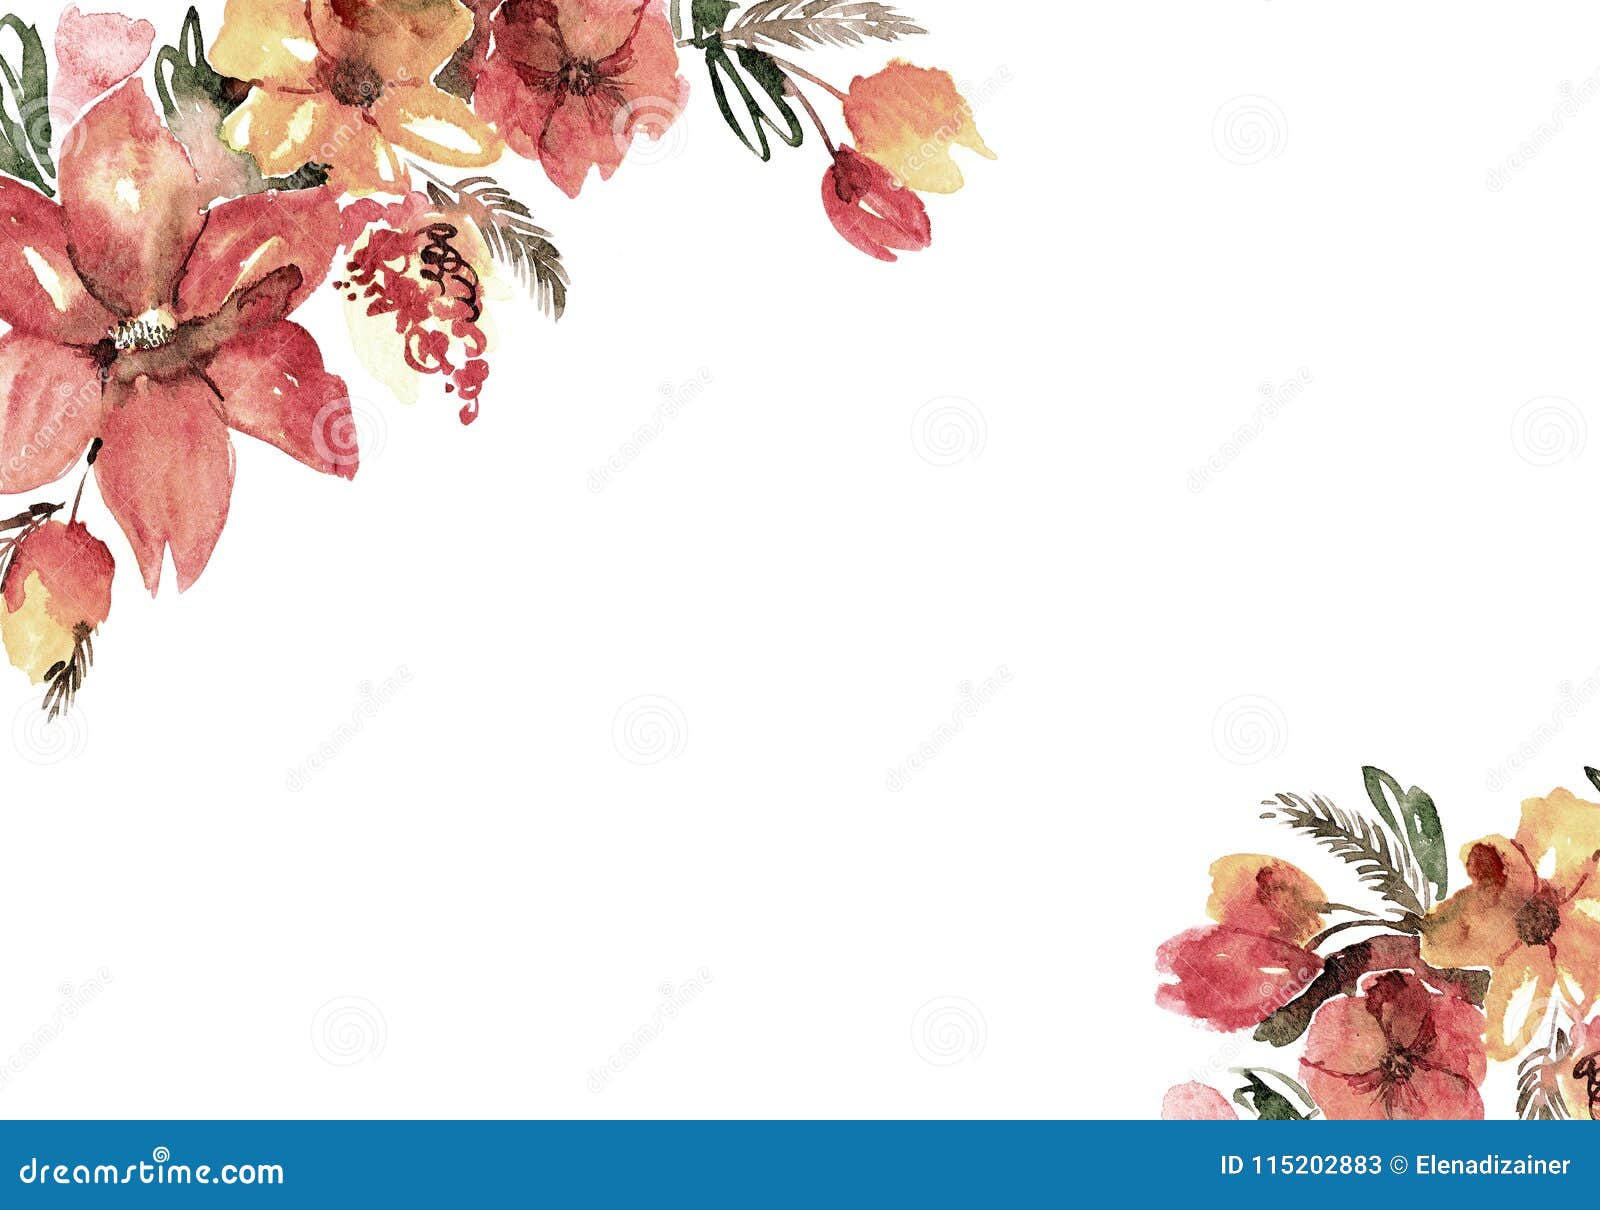 Hoa nước sơn dầu (Watercolor Flower): Hoa nước sơn dầu là một chủ đề rất được yêu thích trong thiết kế thiệp cưới. Với những họa tiết hoa nước sơn dầu tuyệt đẹp, hãy cùng khám phá những mẫu thiệp cưới độc đáo và tuyệt đẹp nhất để khẳng định tình yêu của bạn!